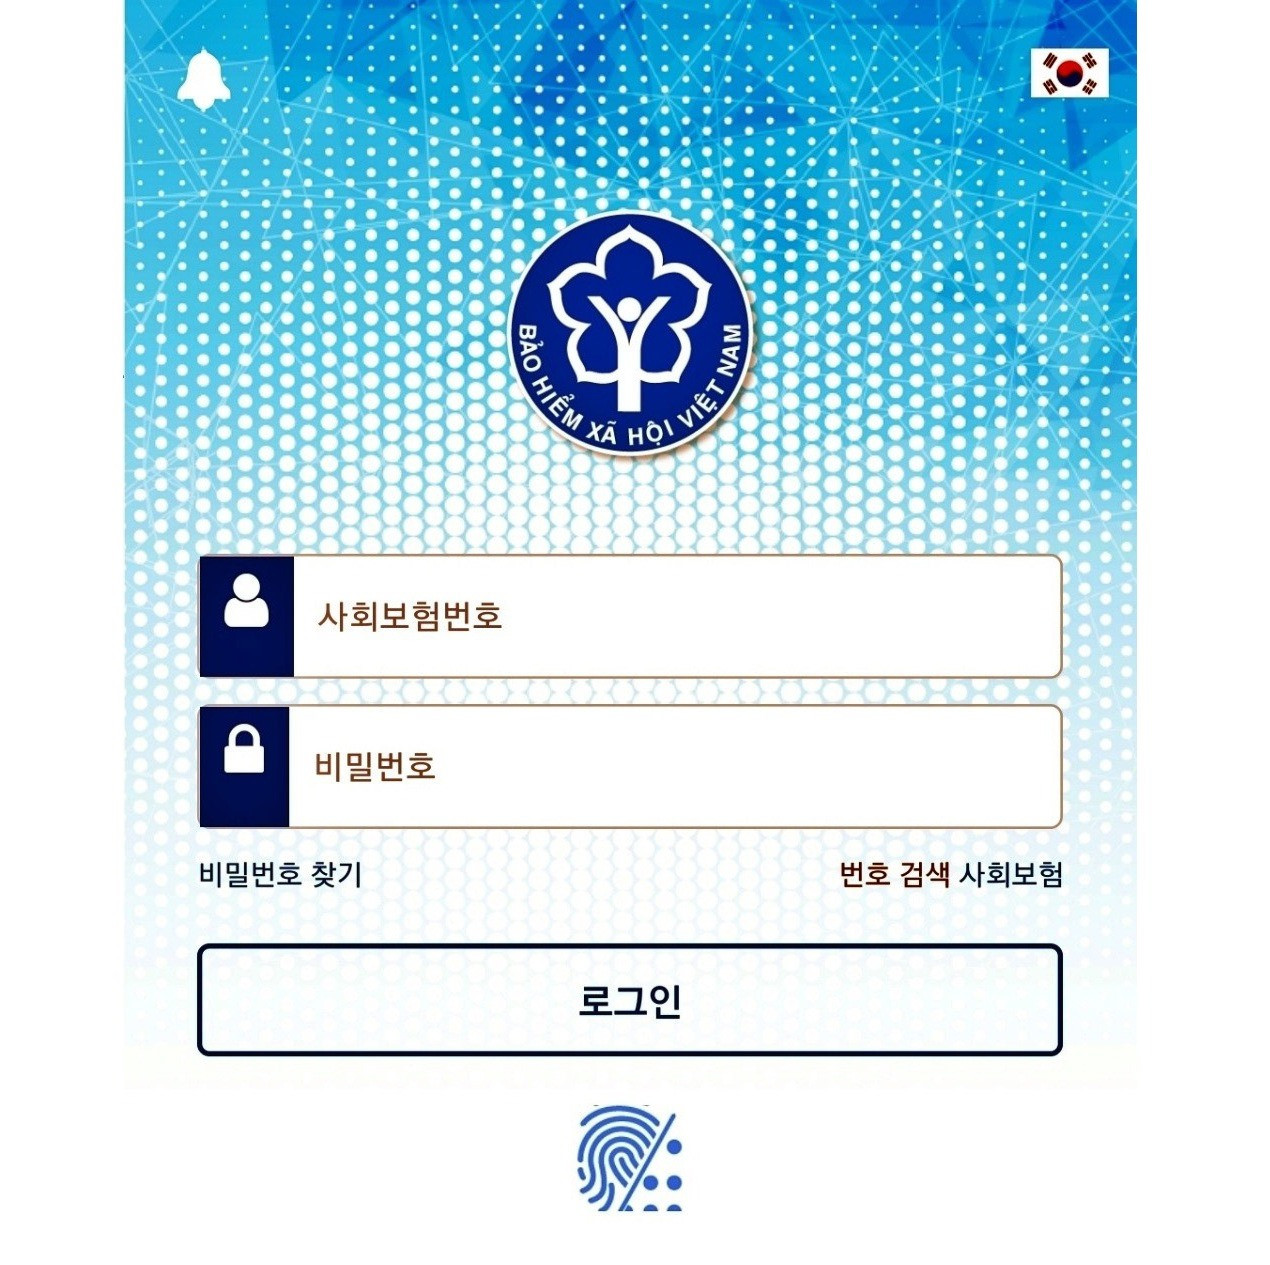 Giao diện ứng dụng VssID phiên bản tiếng Hàn Quốc. Ảnh: HOÀNG ĐẠO